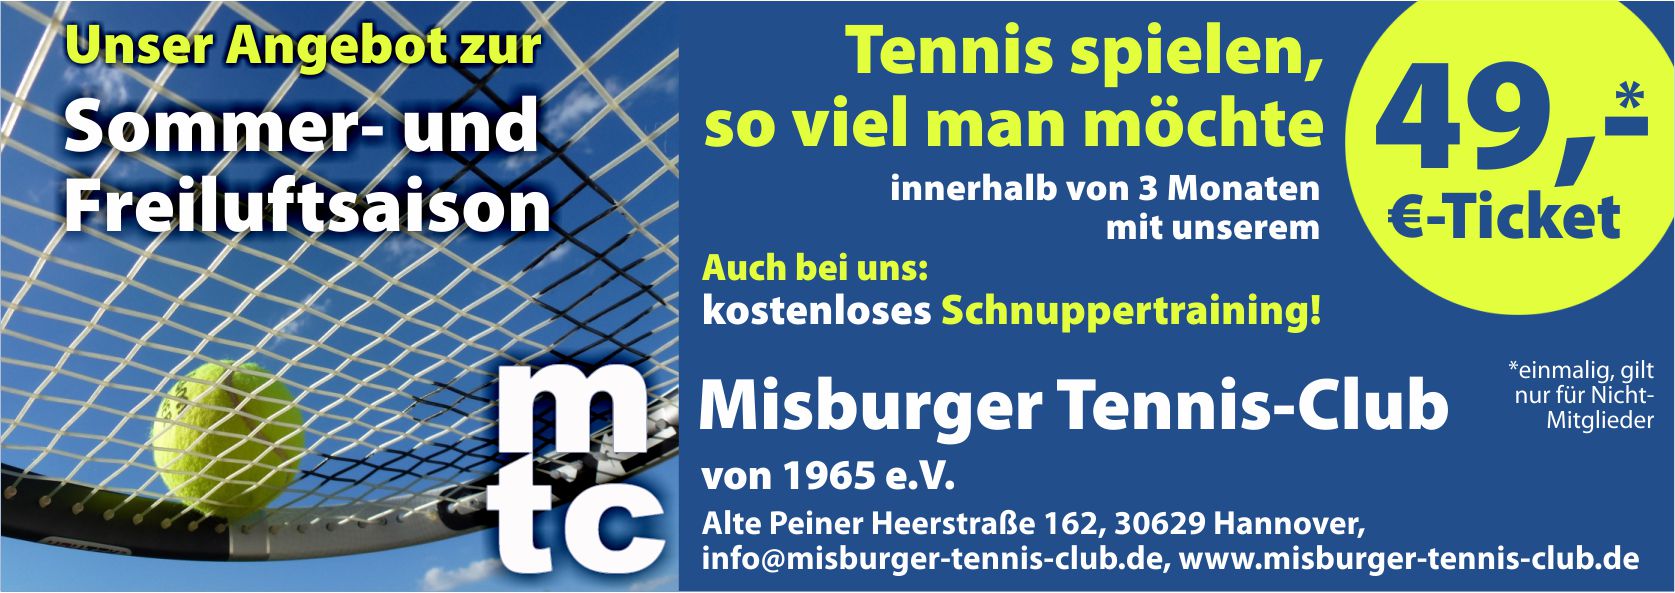 Unser Angebot zur Sommer- und Freiluftsaison 2023. Tennis spielen, so viel man möchte mit dem 49 Euro-Ticket. Auch bei uns: Kostenloses Schnuppertraining!